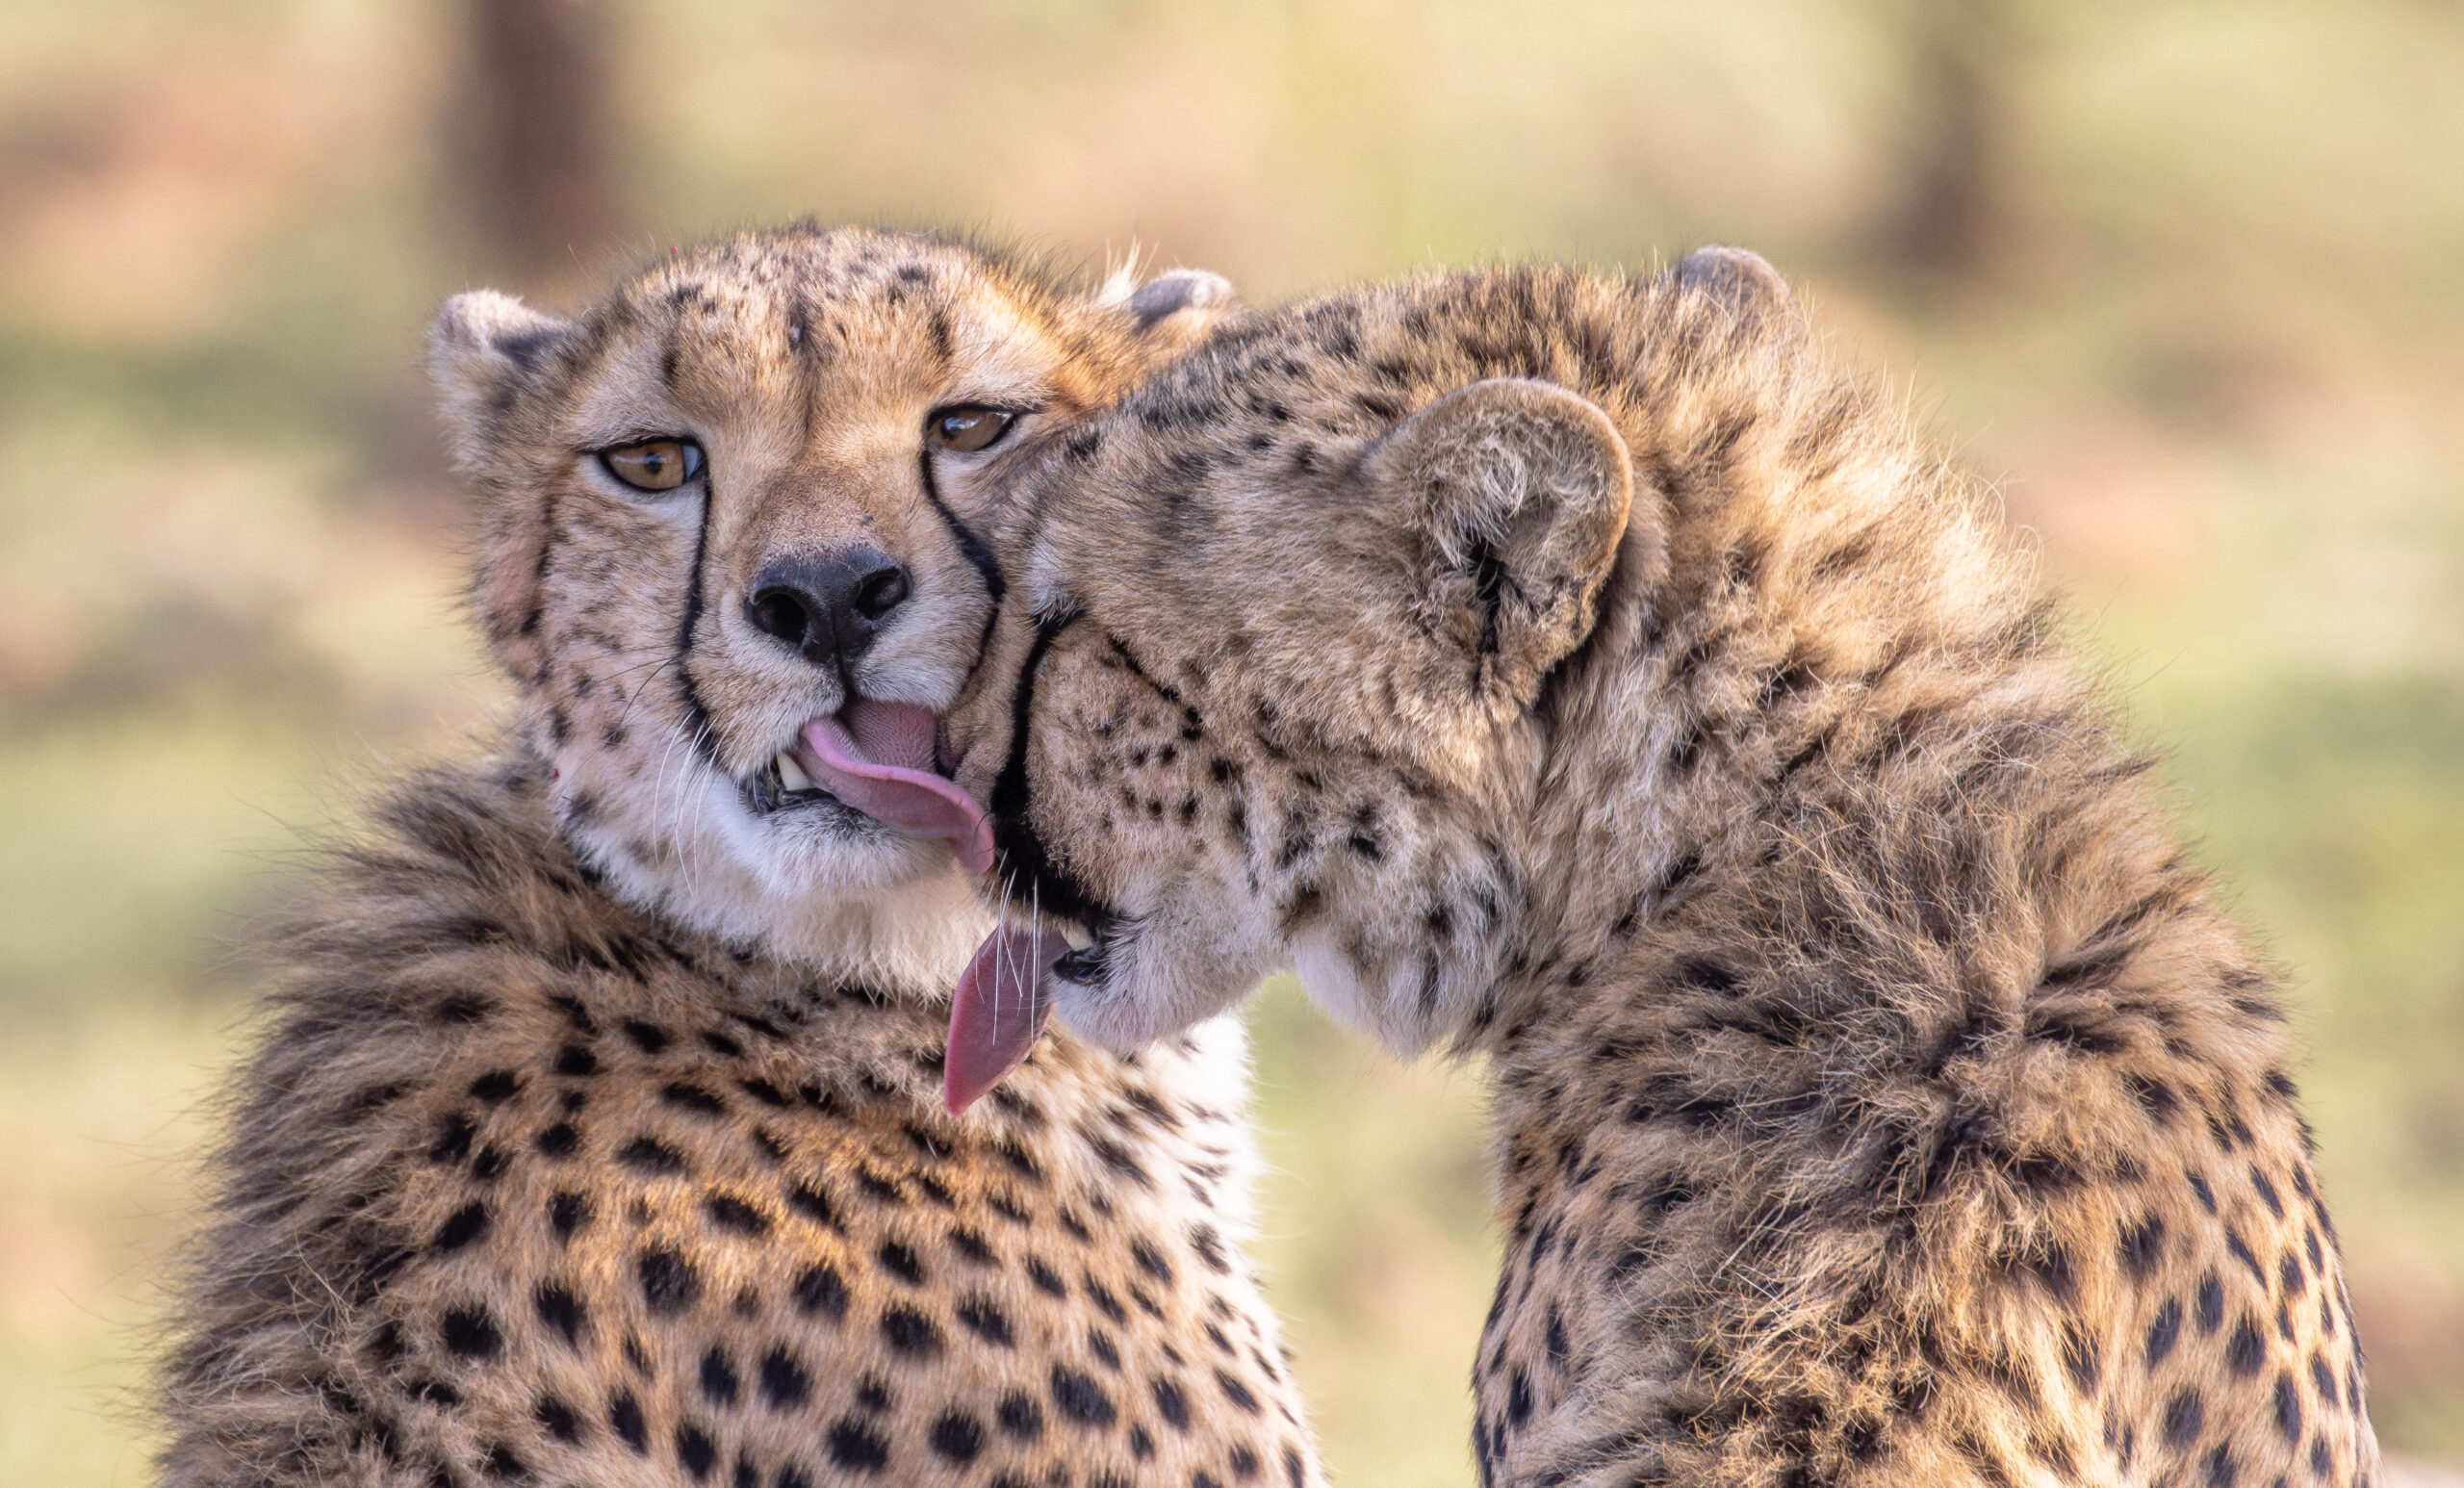 Cheetah cub licking its mom cute moment between cheetahs